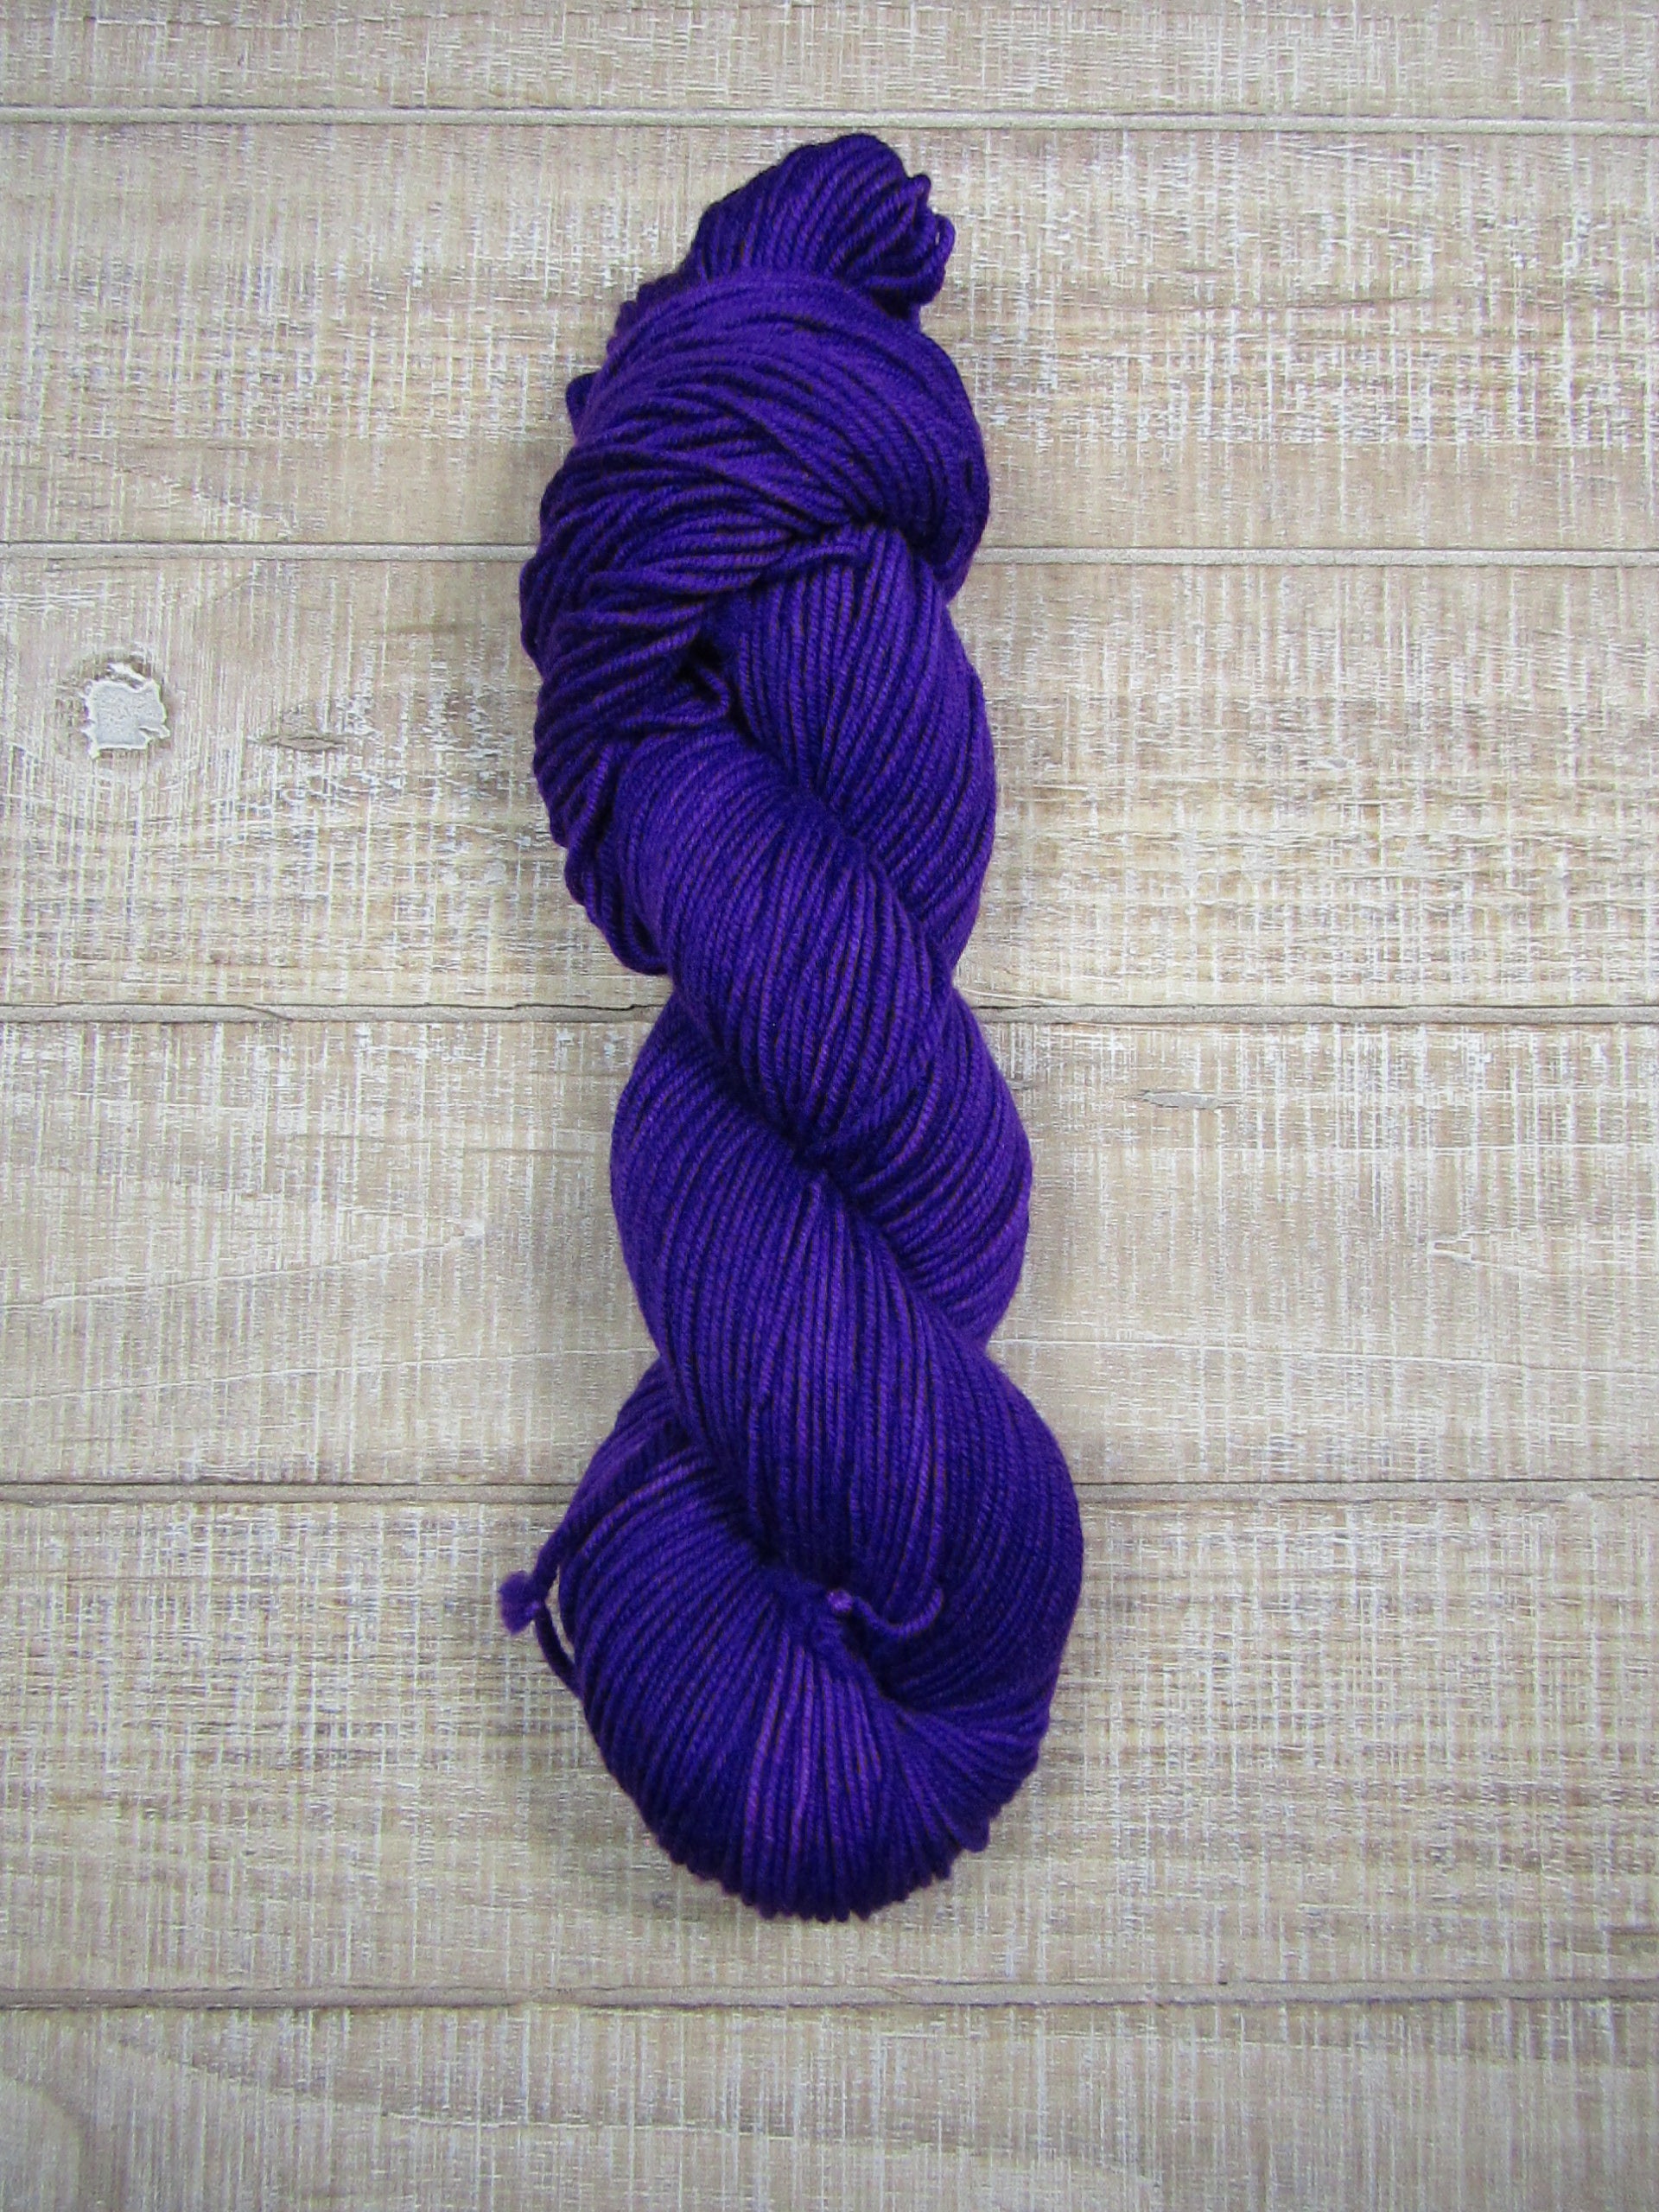 Hand-dyed yarn - Grape Merino/Cashstyle nylon worsted weight yarn in grape purple